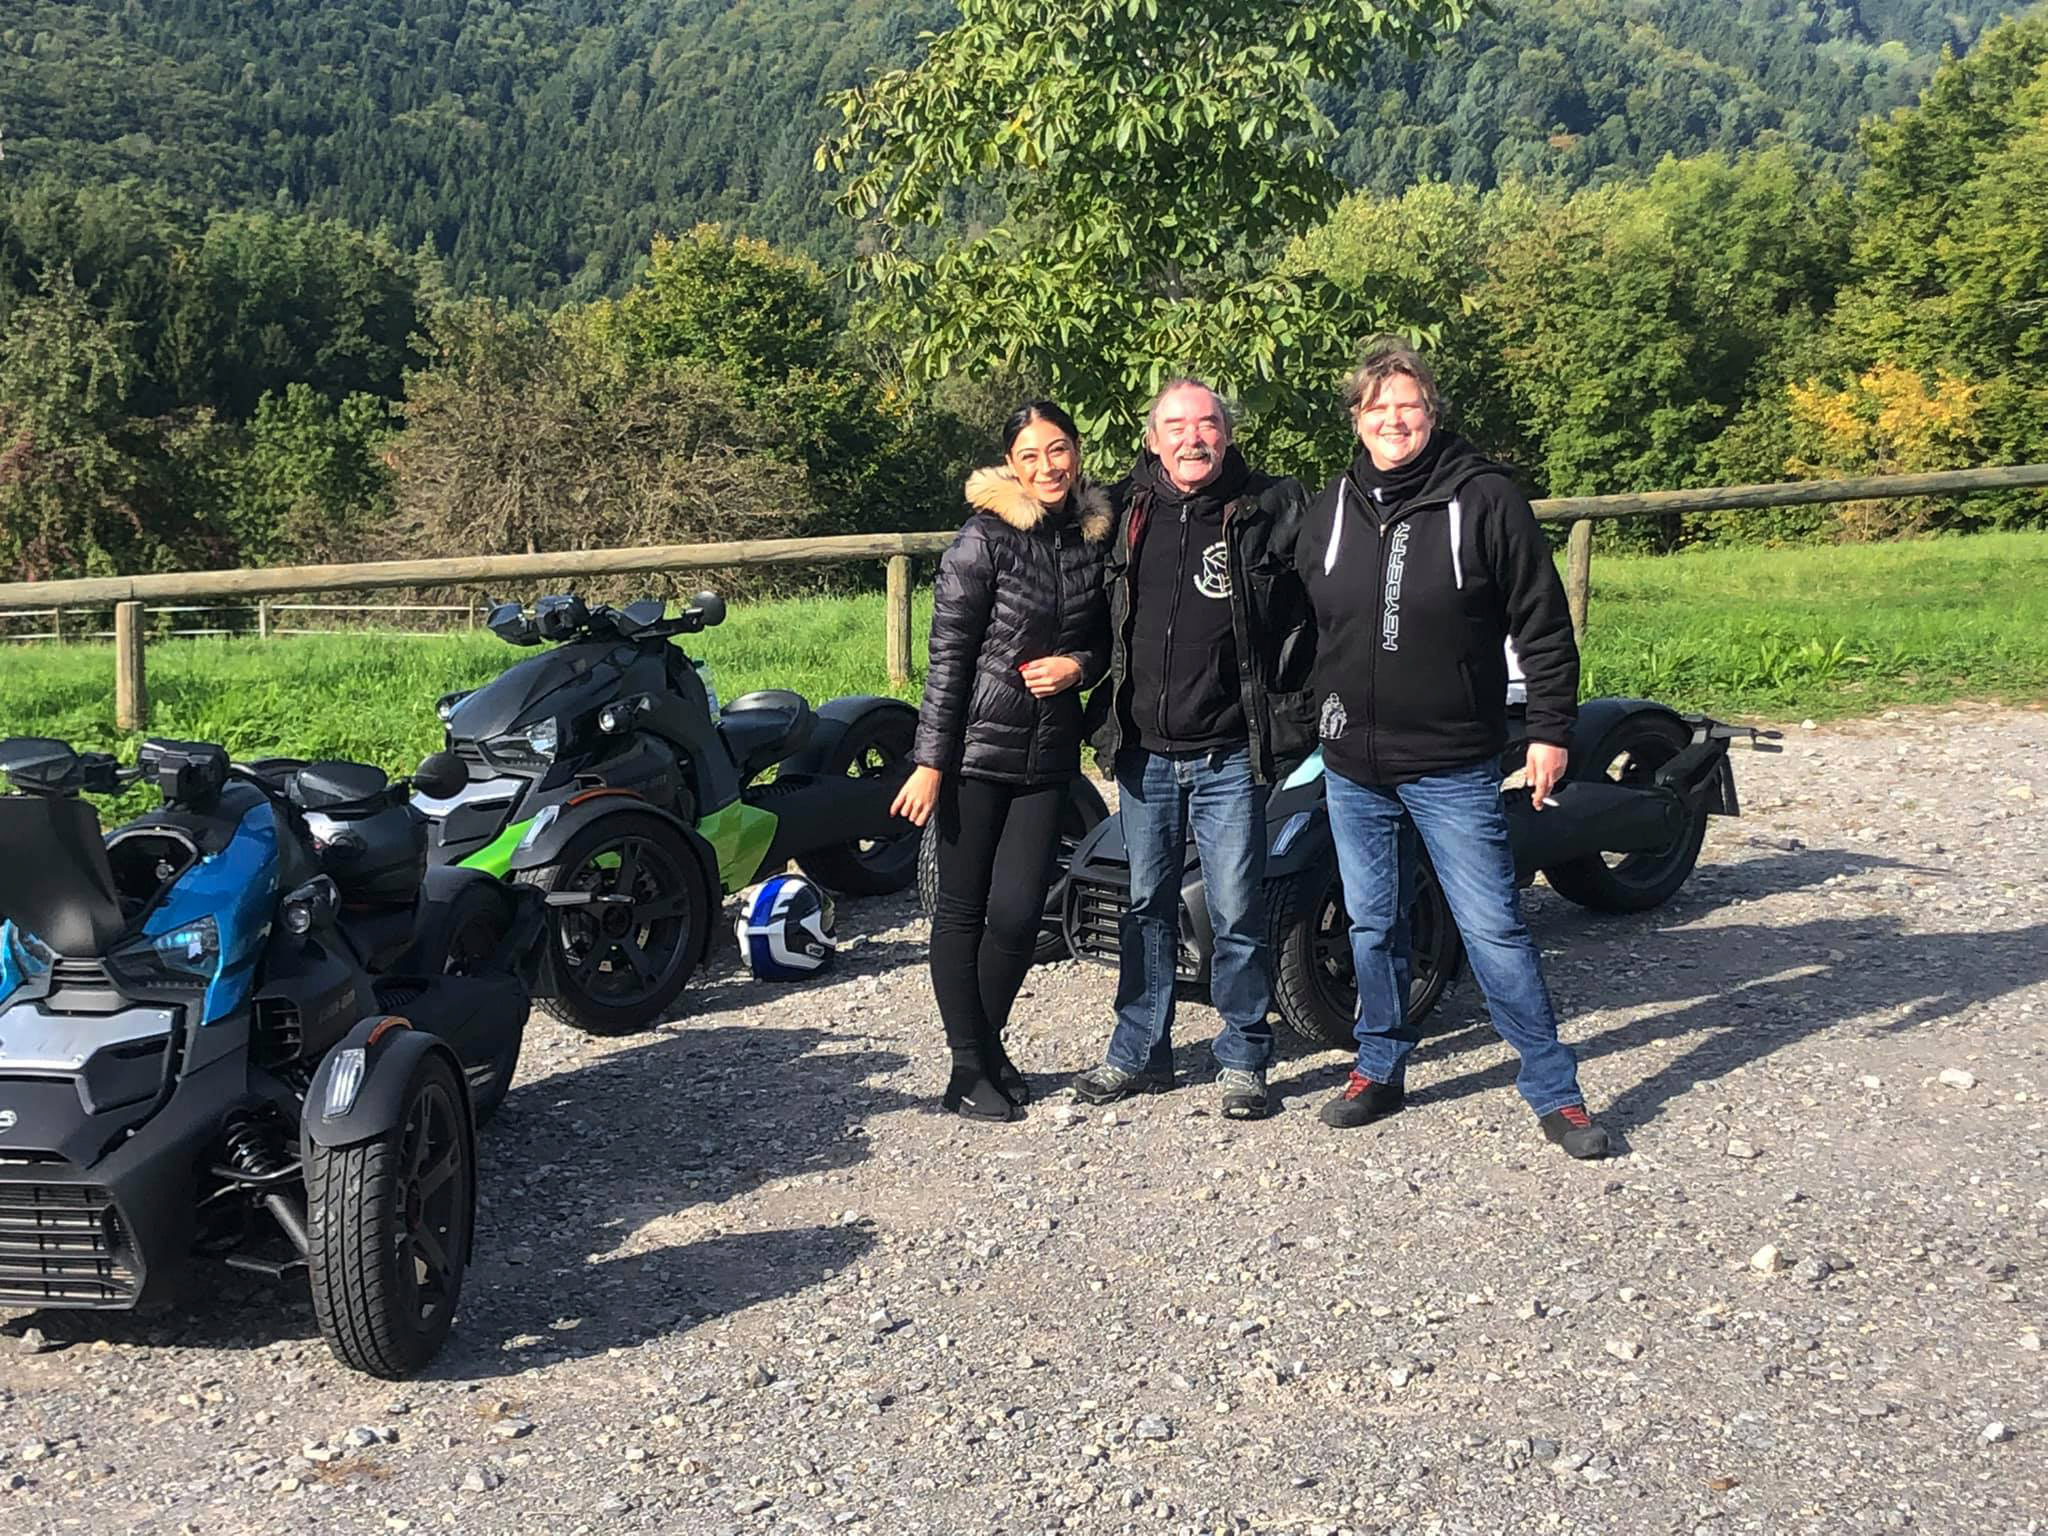 Drei Teilnehmende einer Ryker Tour mit Ihren Can Am Ryker Fahrzeugen und Ausrüstung in den Bergen mit vielen Bäumen im Hintergrund